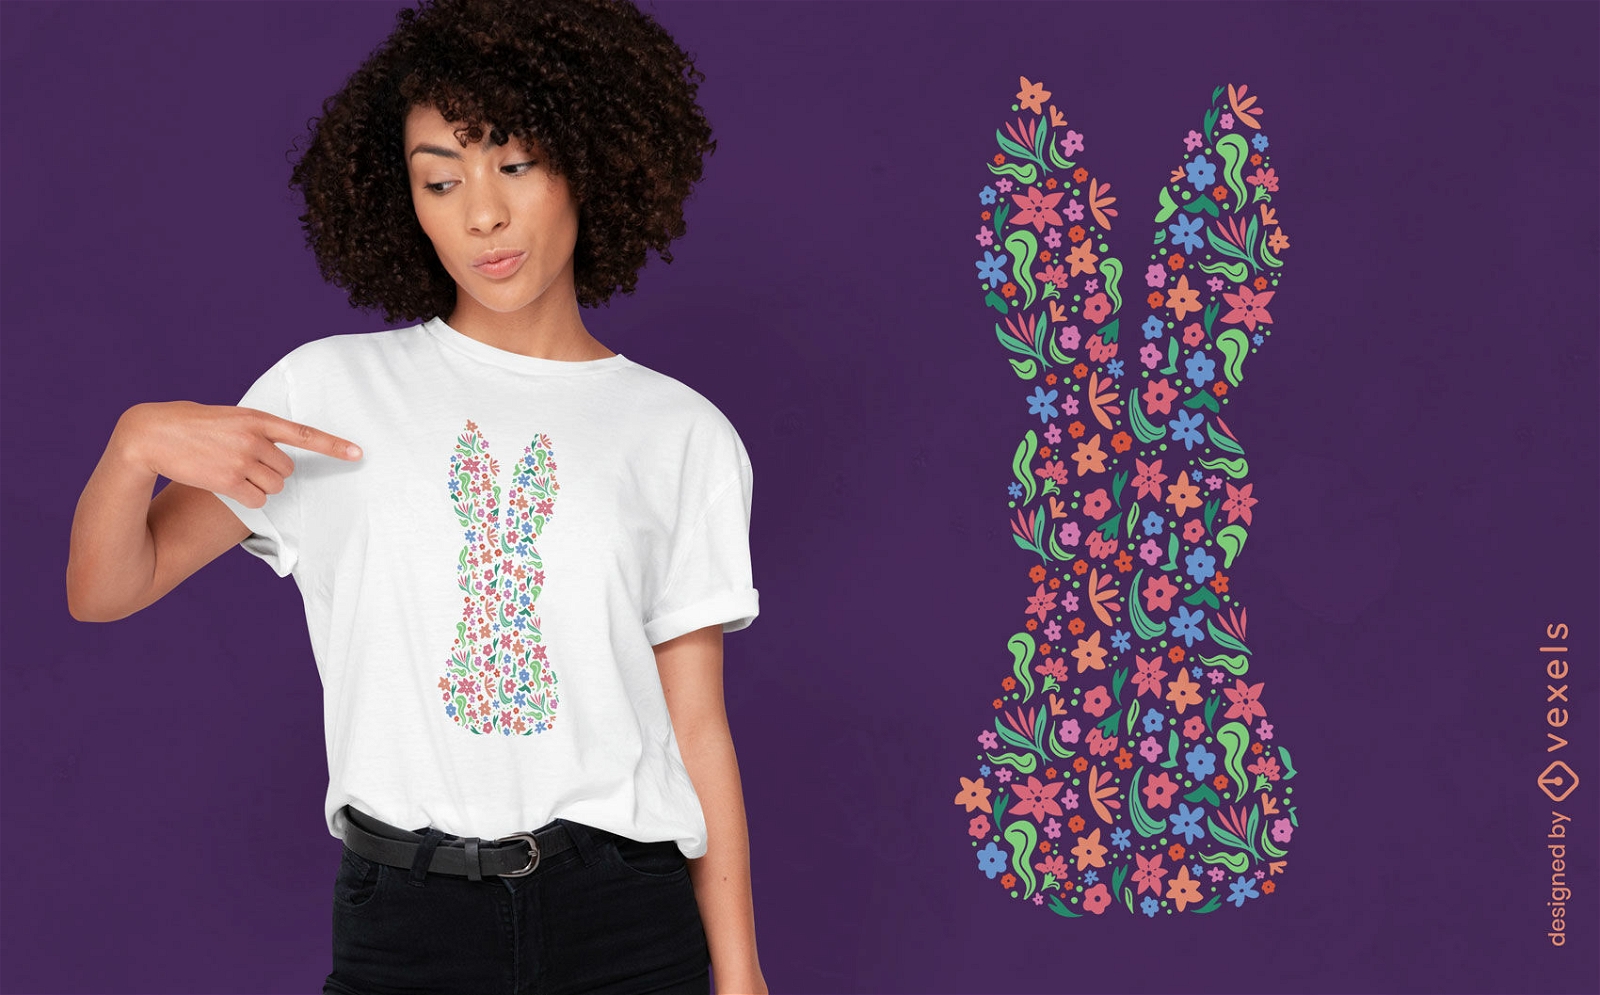 Diseño de camiseta de silueta de conejito floral